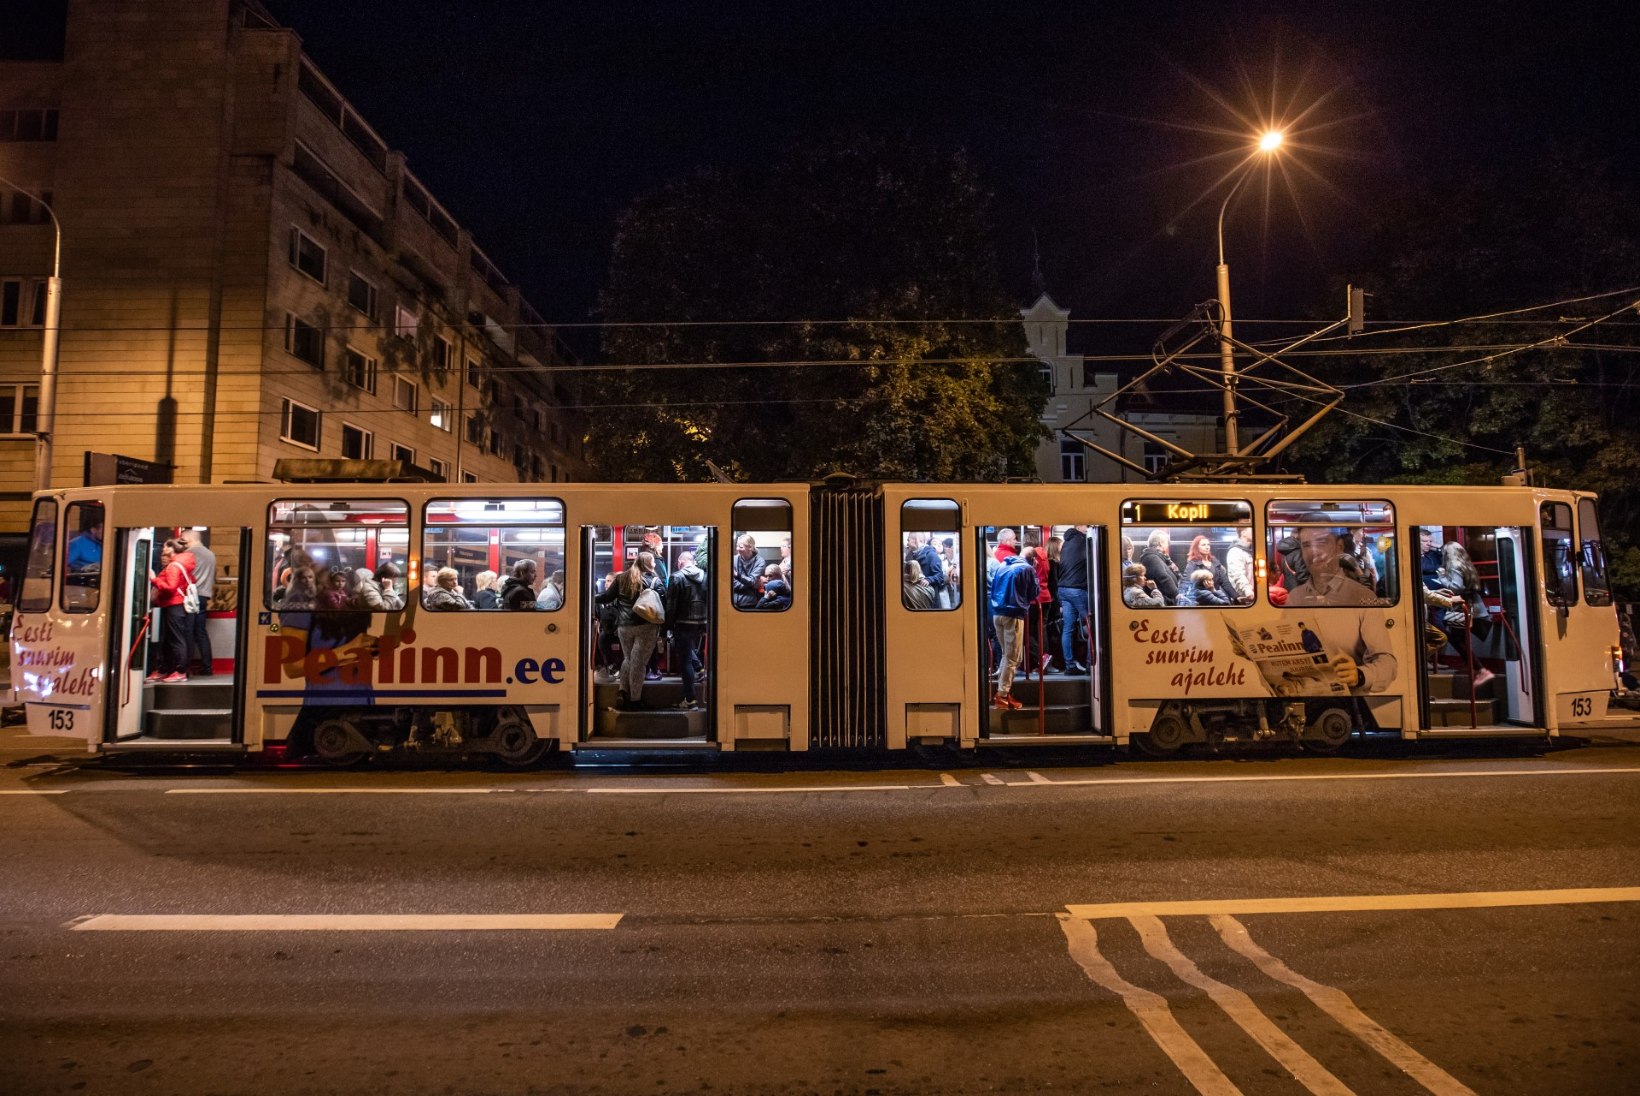 FOTOD | PISUT KITSAS: valgusfestivalilised pressisid end trammidesse, nii et millimeetritki ei jäänud üle